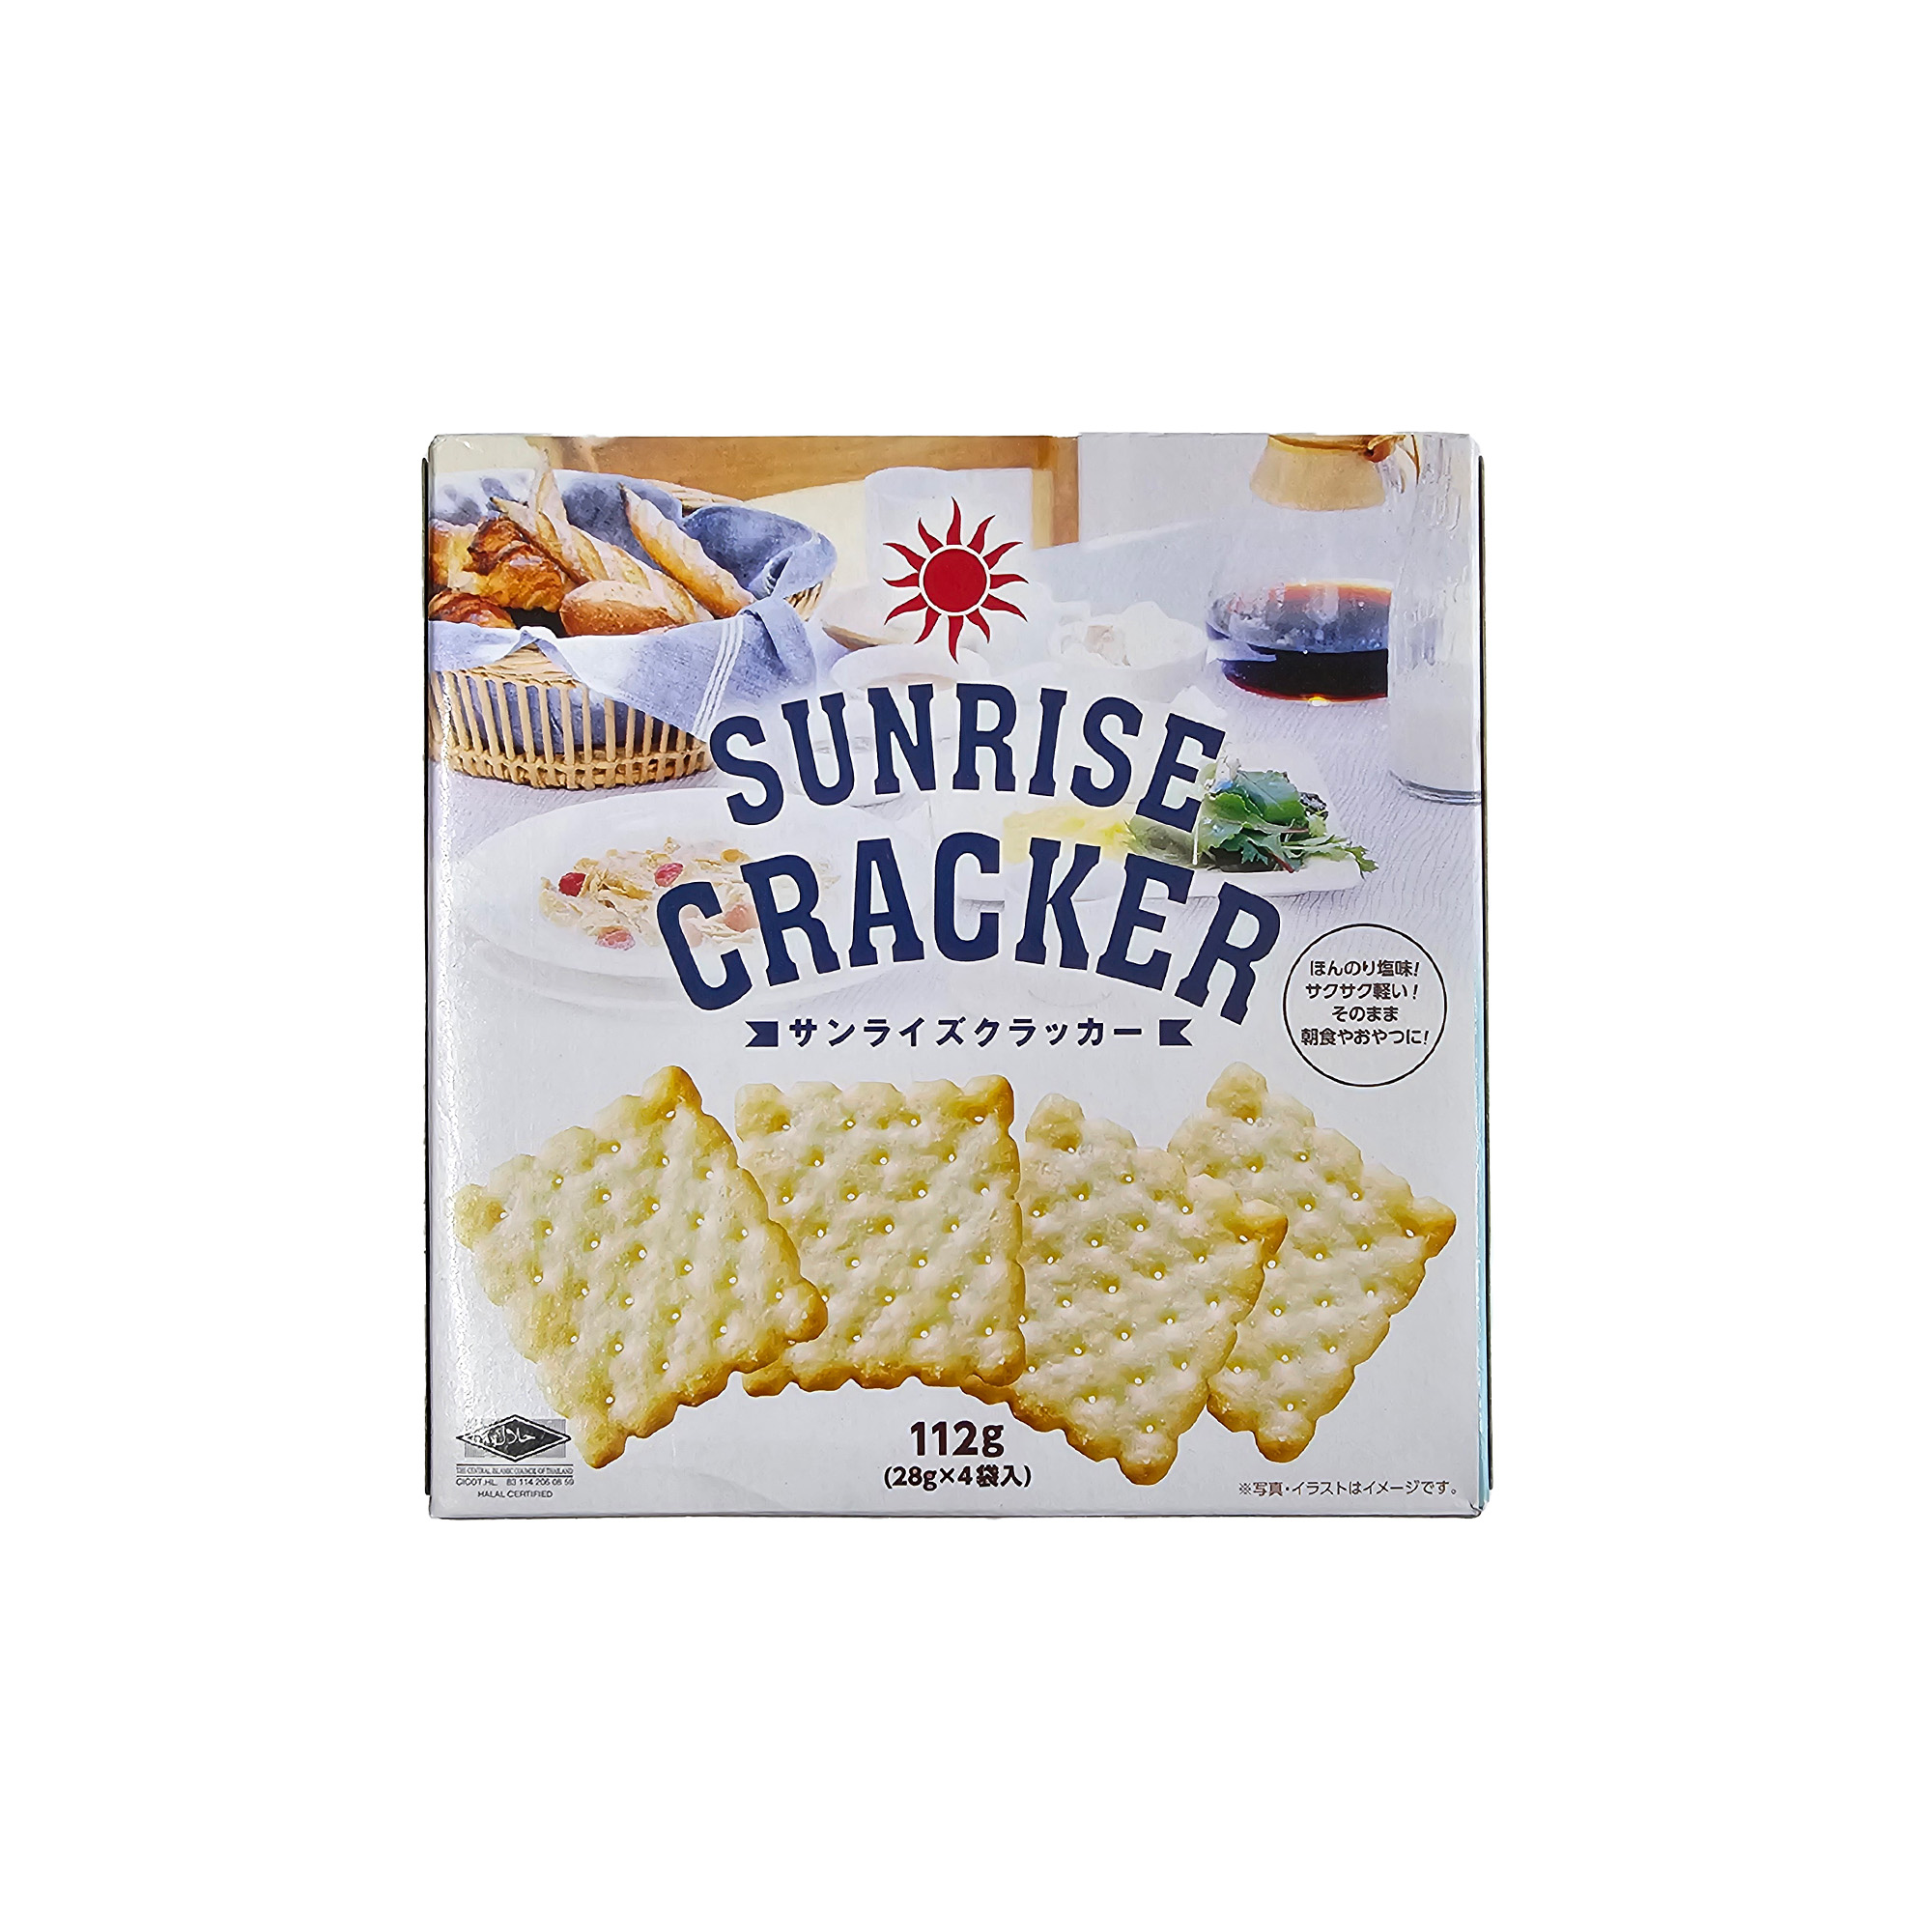 Sunrise Cracker